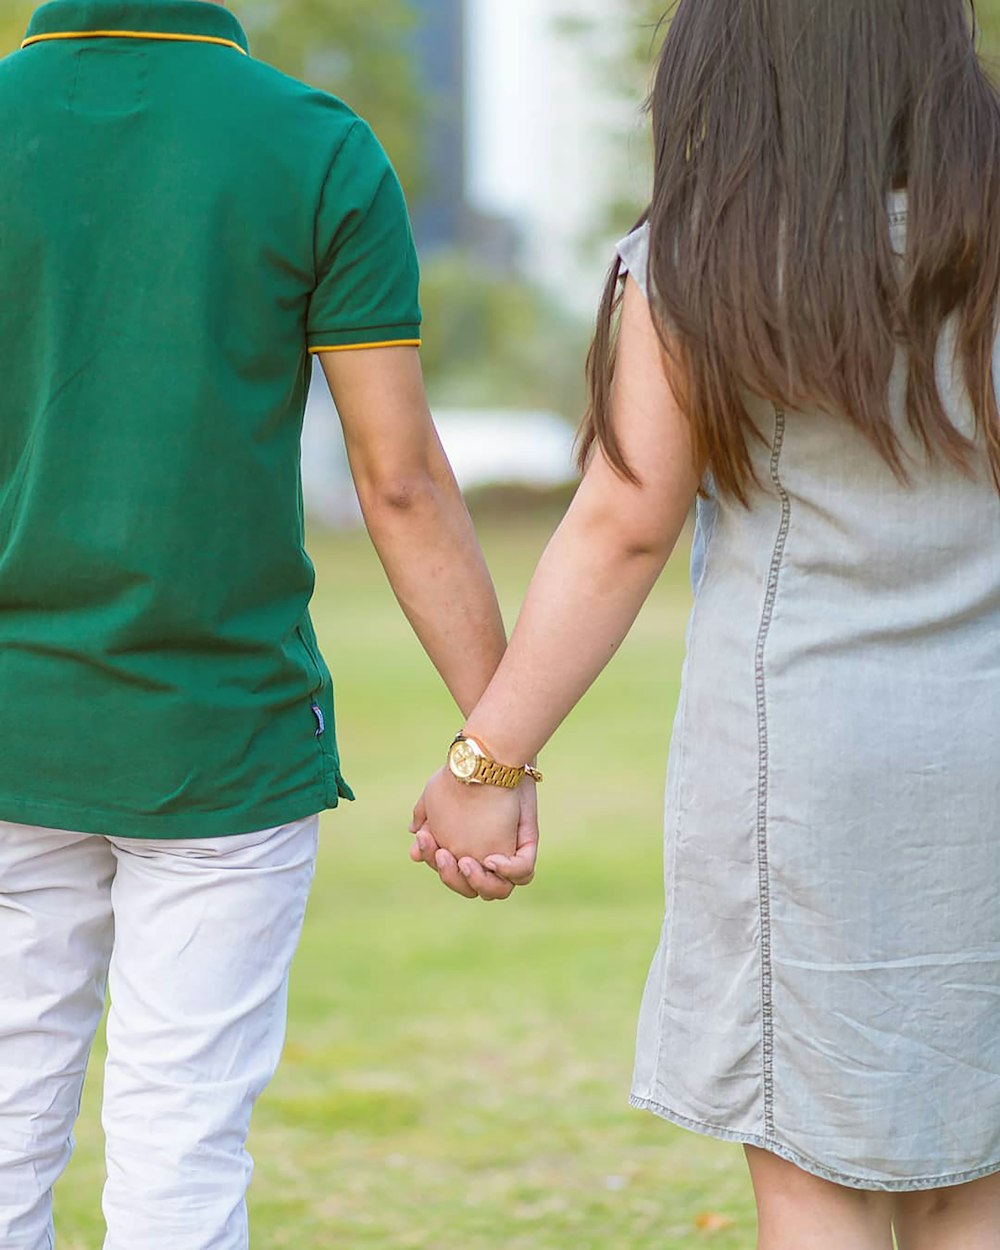 Un homme et une femme se tenant la main dans un parc